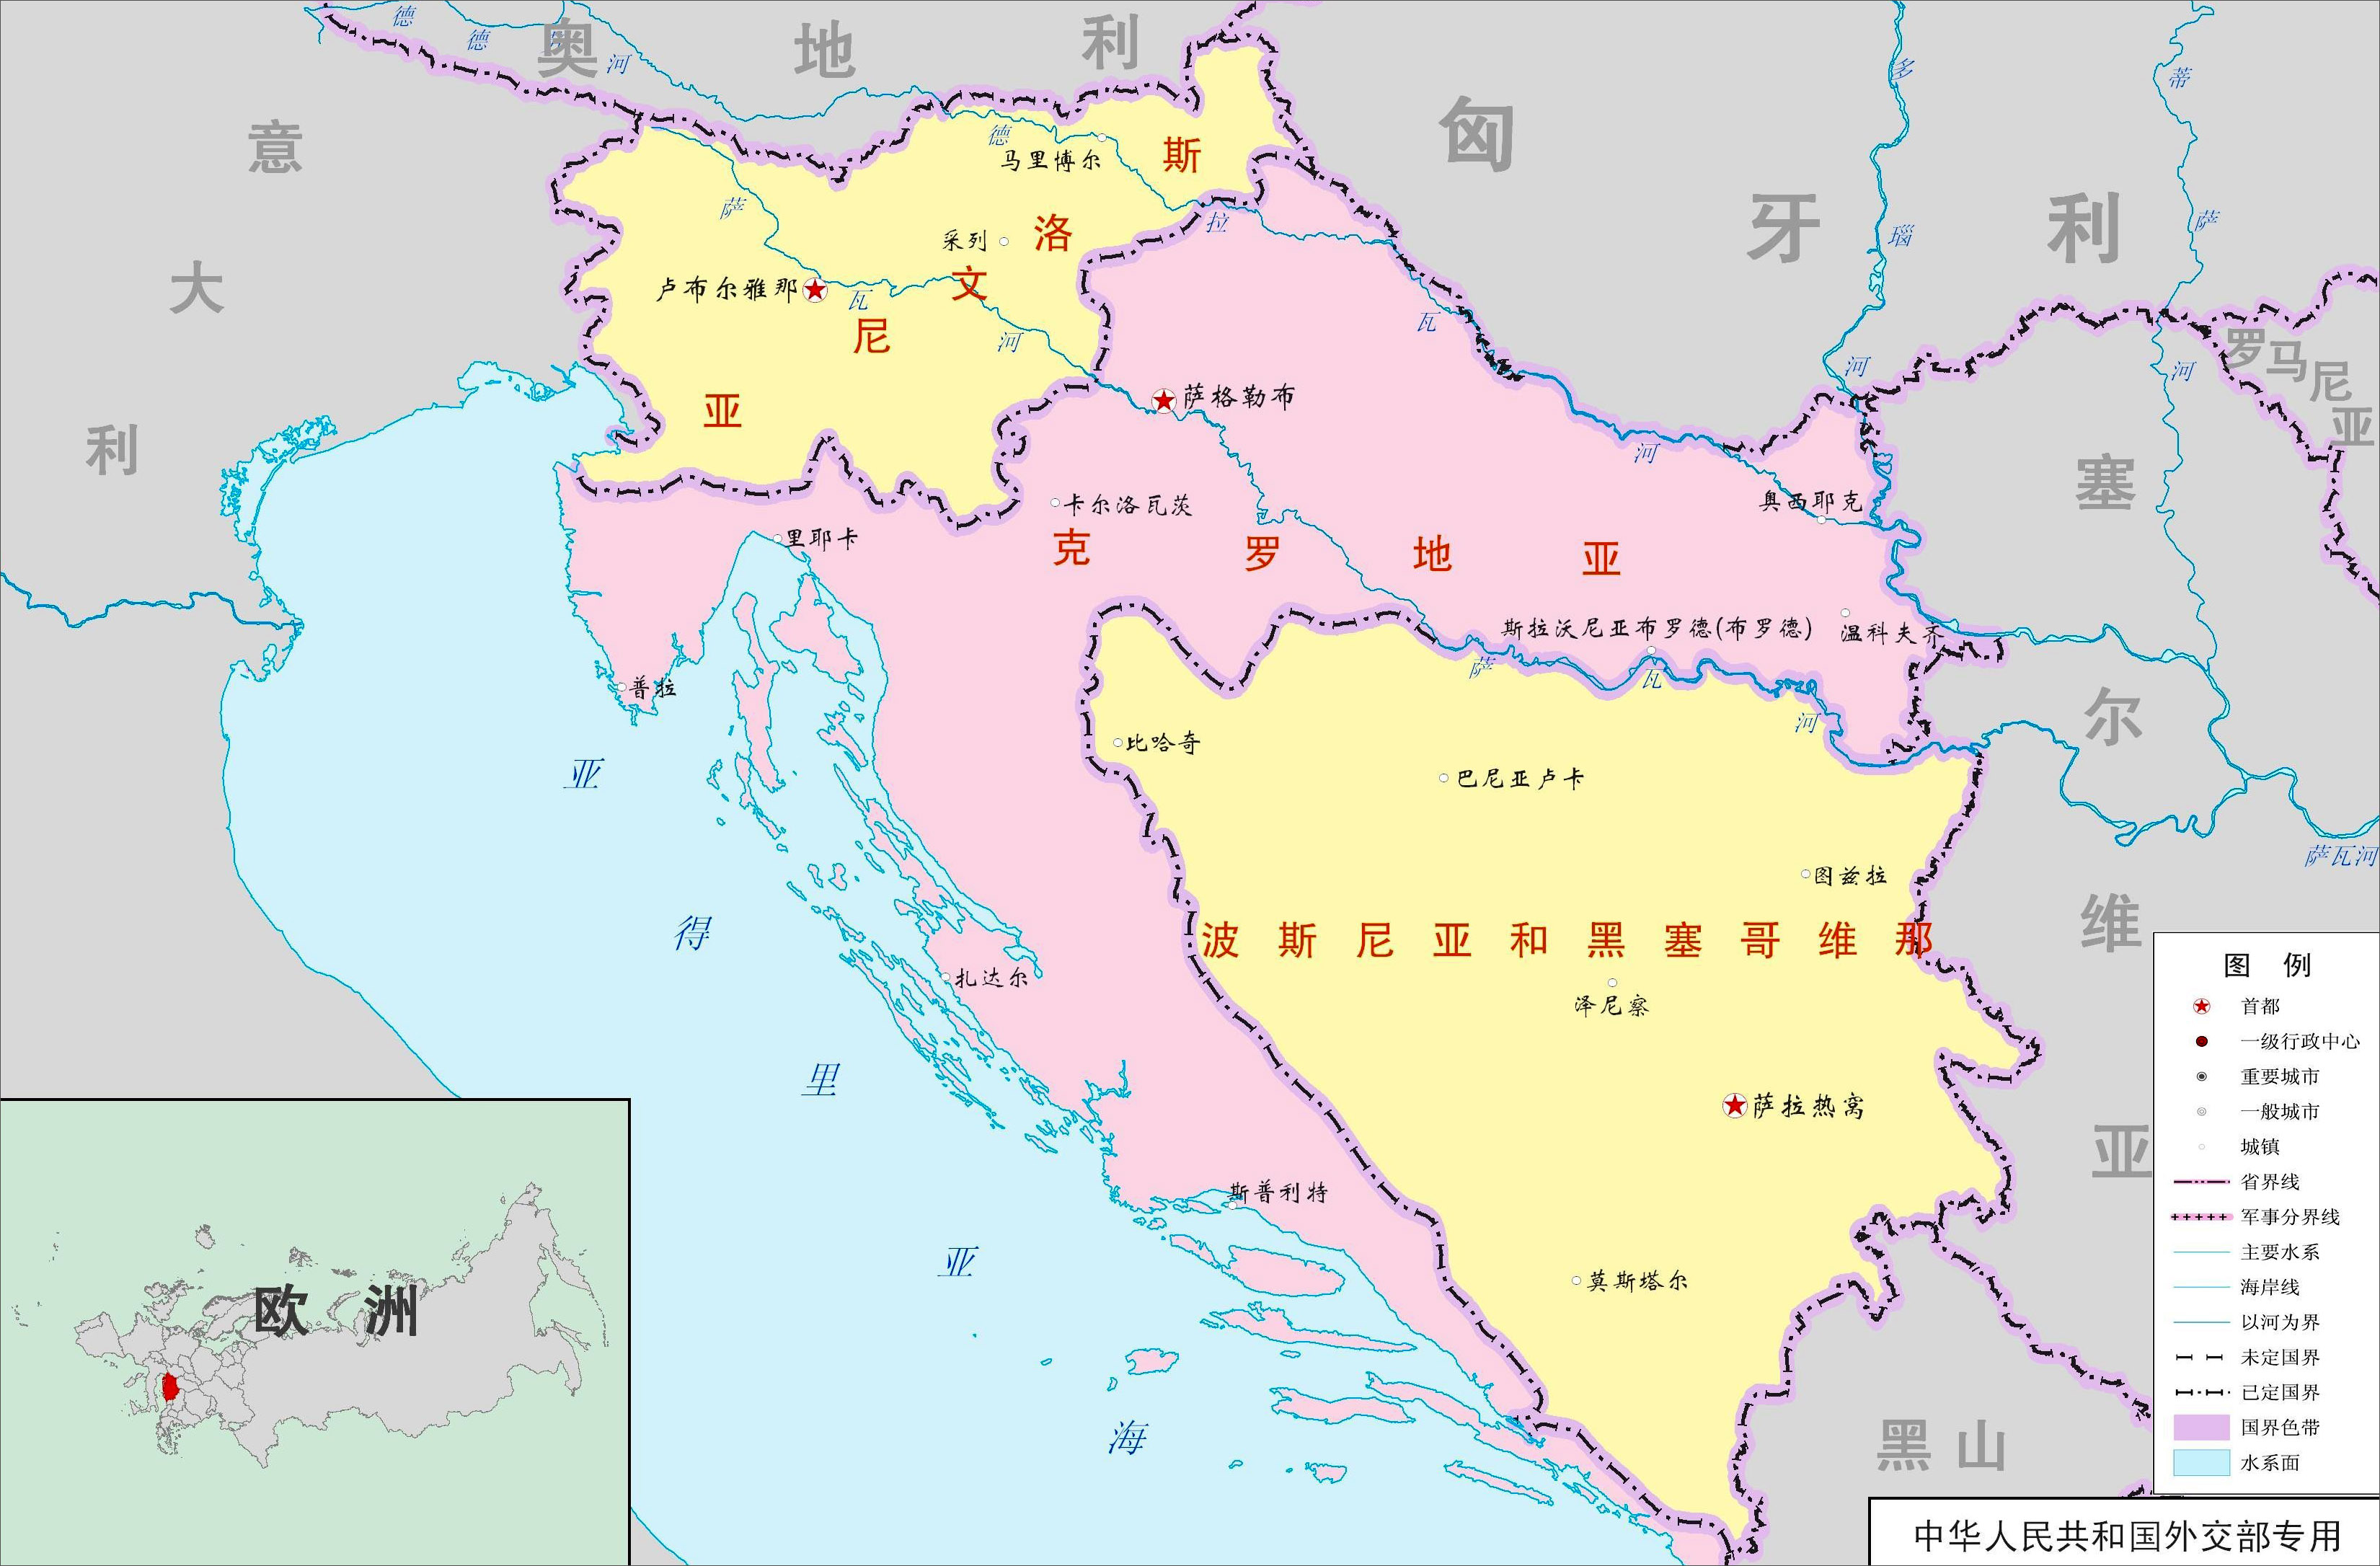 塞尔维亚与蒙特内哥罗政区图 - 塞尔维亚地图 - 地理教师网